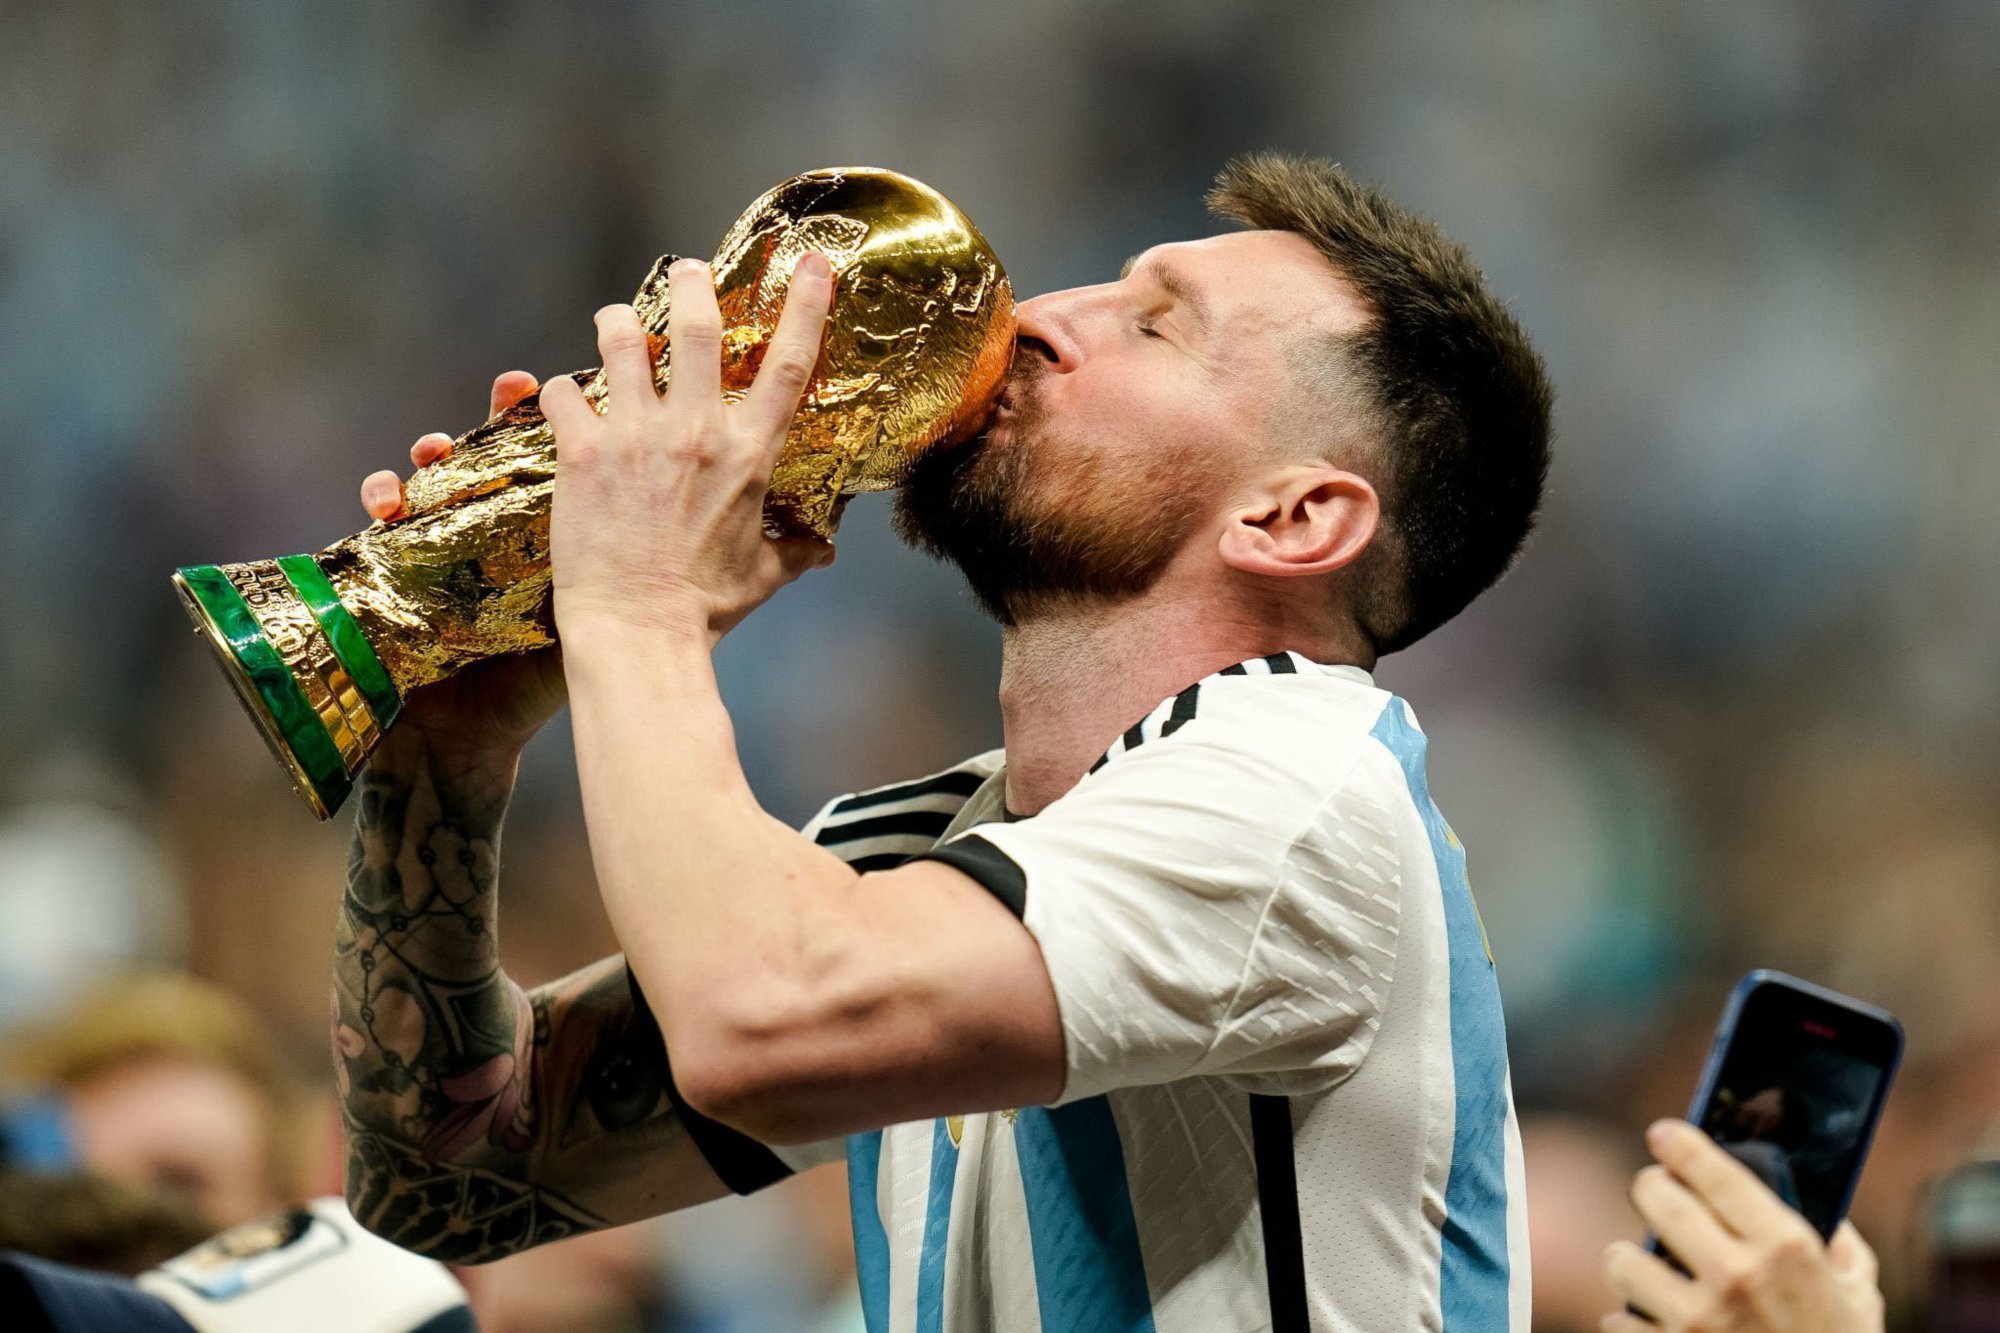 Hãy đến với hình ảnh Cup World Cup Messi để cảm nhận những giây phút huy hoàng của ngôi sao này trong giải đấu lớn nhất thế giới. Khám phá xem bóng đá thế giới đã phải nể phục Messi bằng những chiếc cúp thắng lợi ra sao nhé!